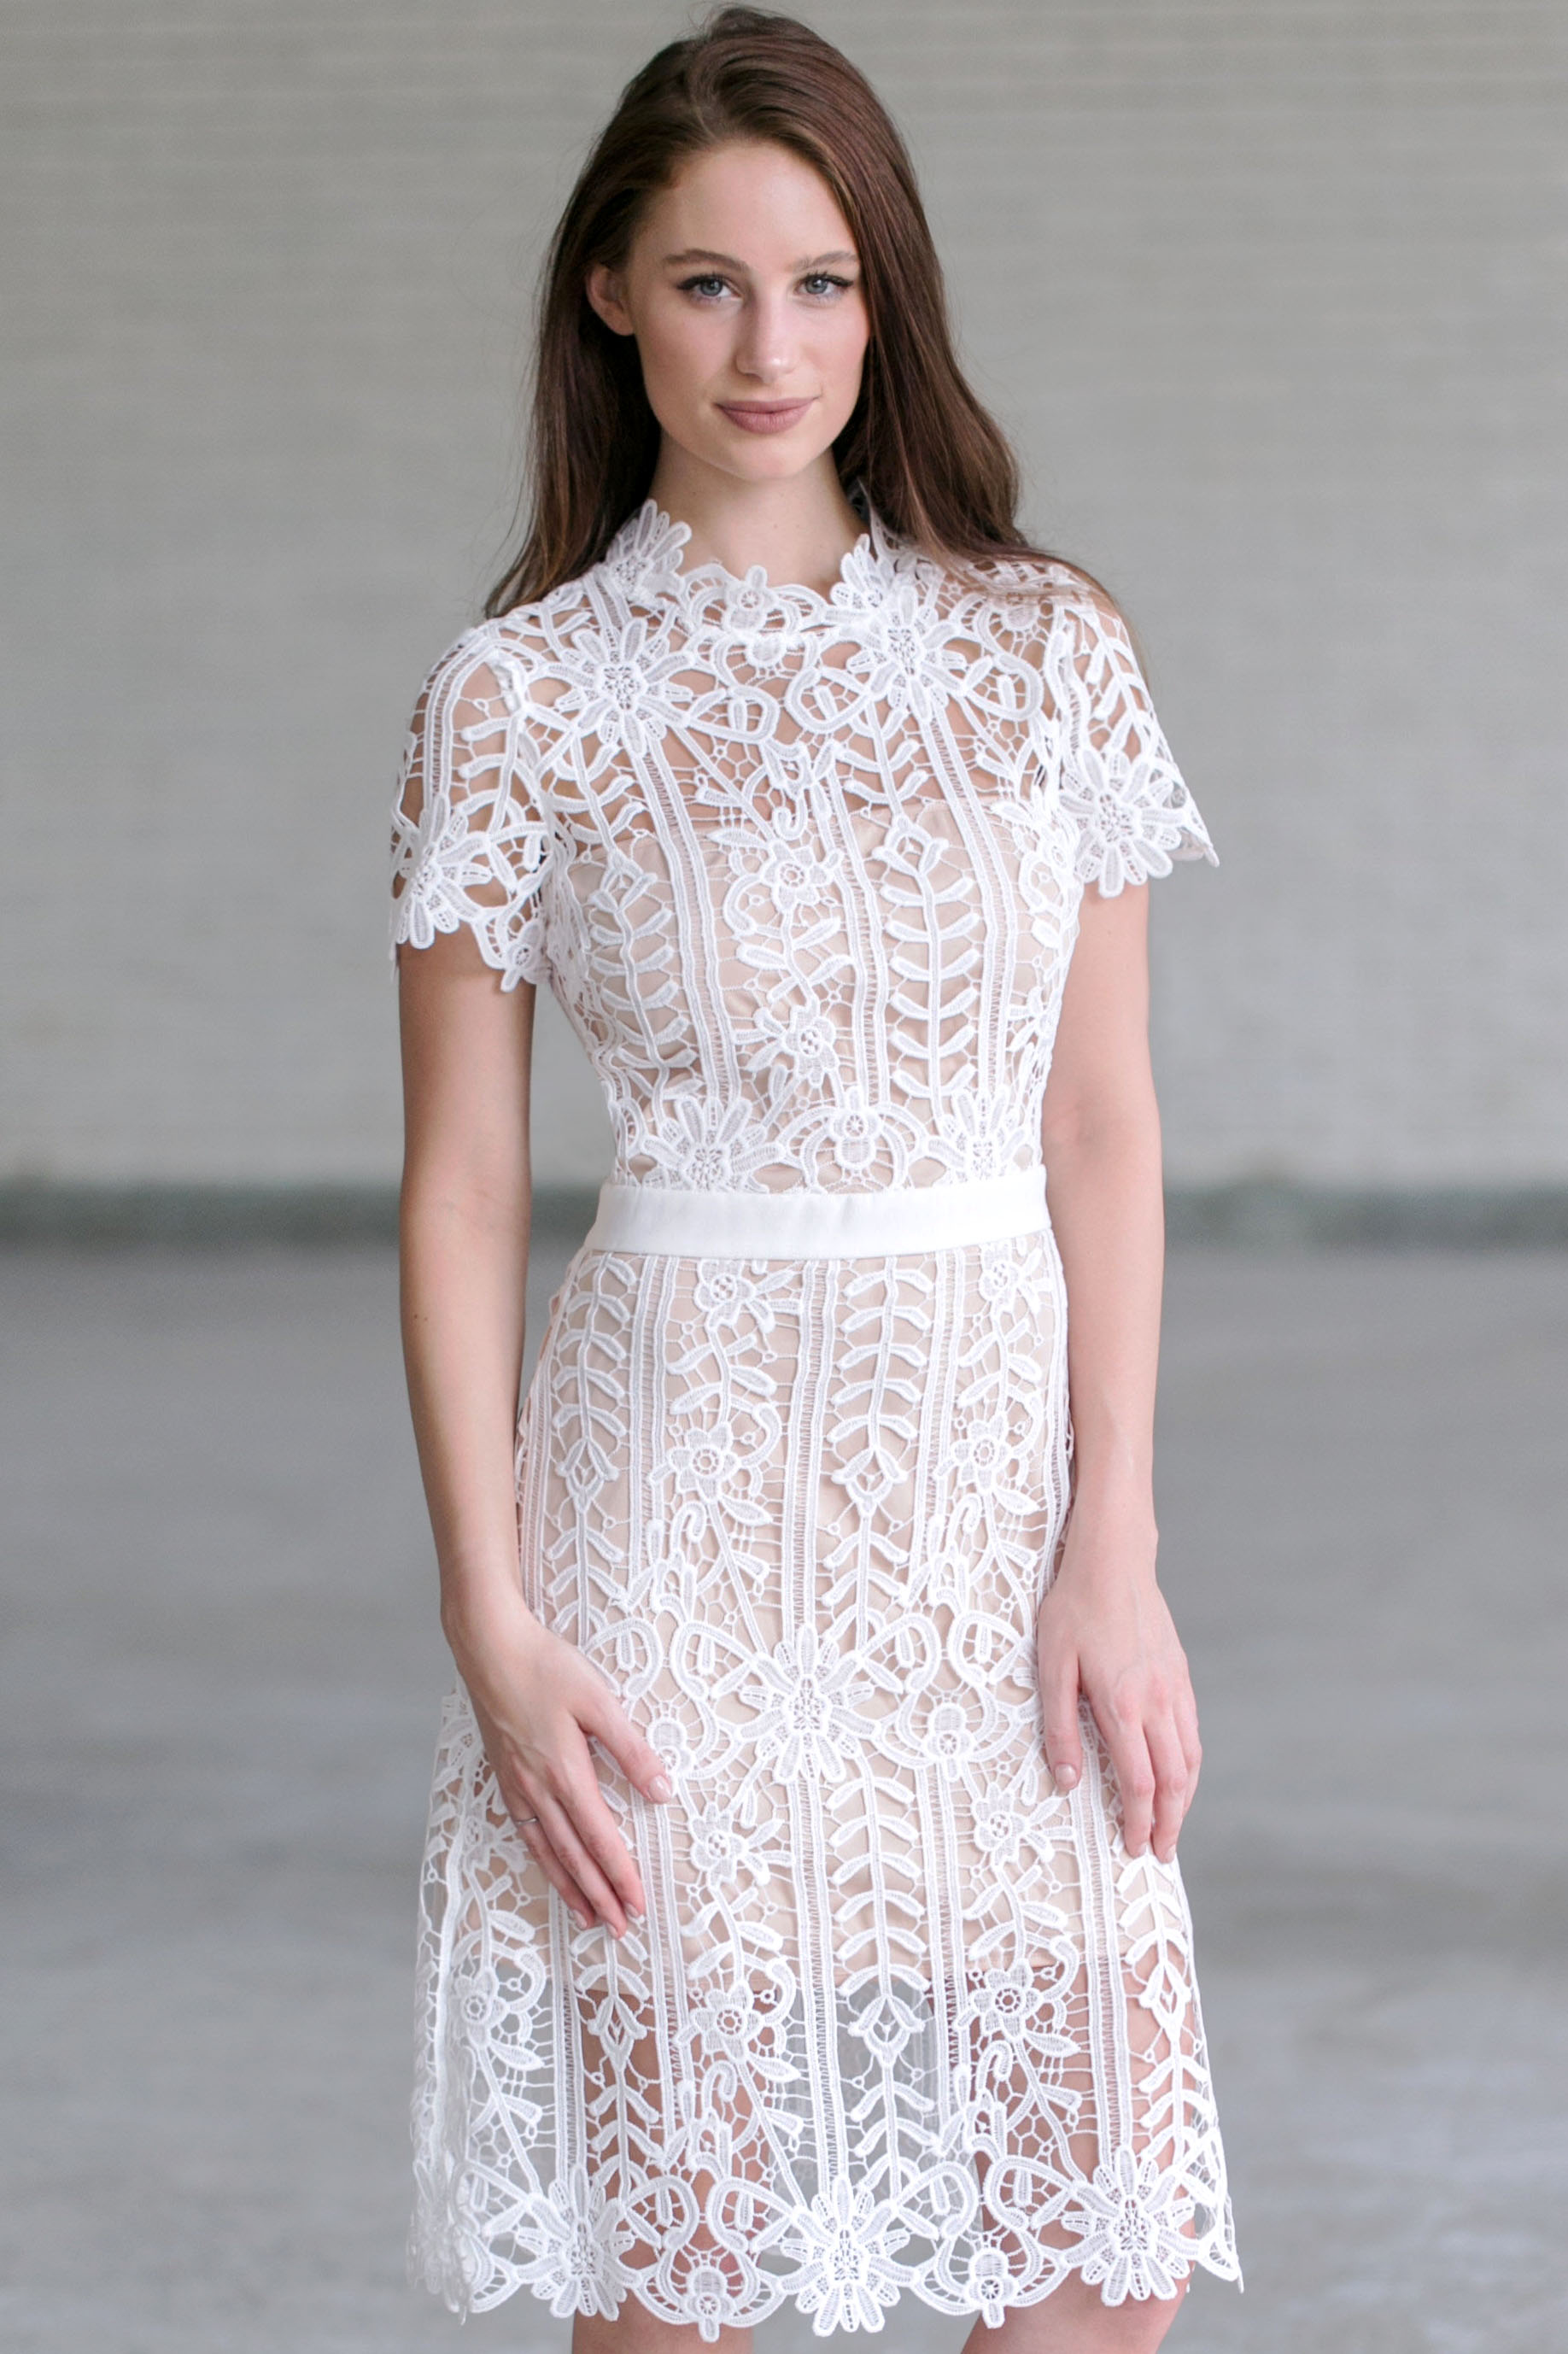 white dress midi lace